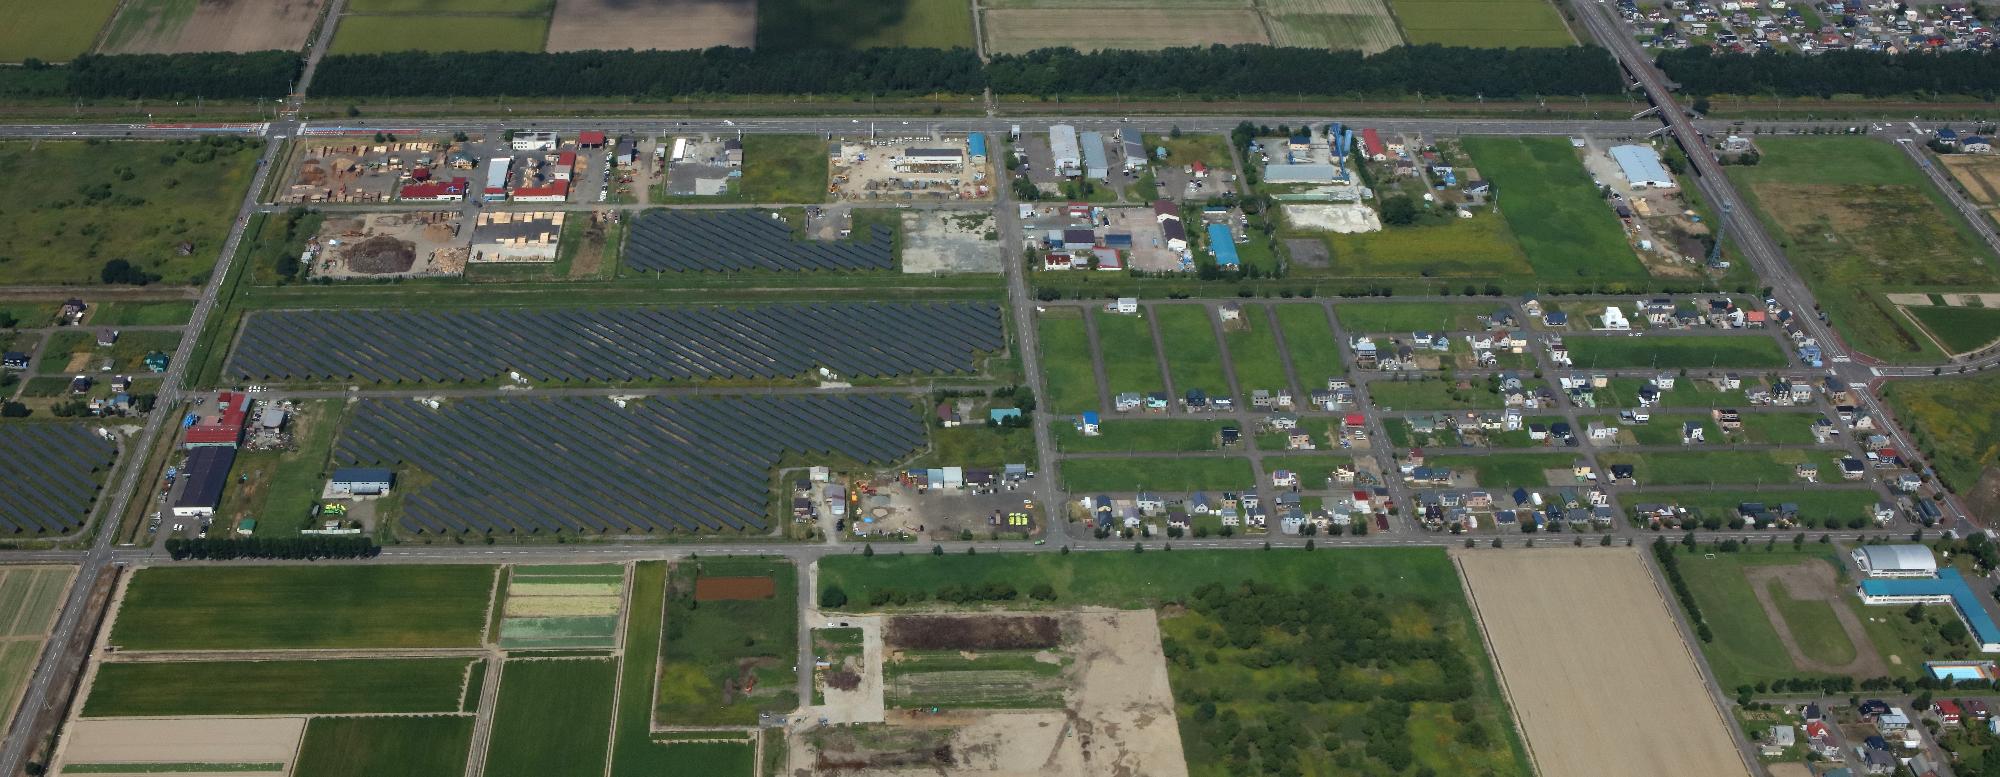 上幌向工業団地を上空から撮影した画像